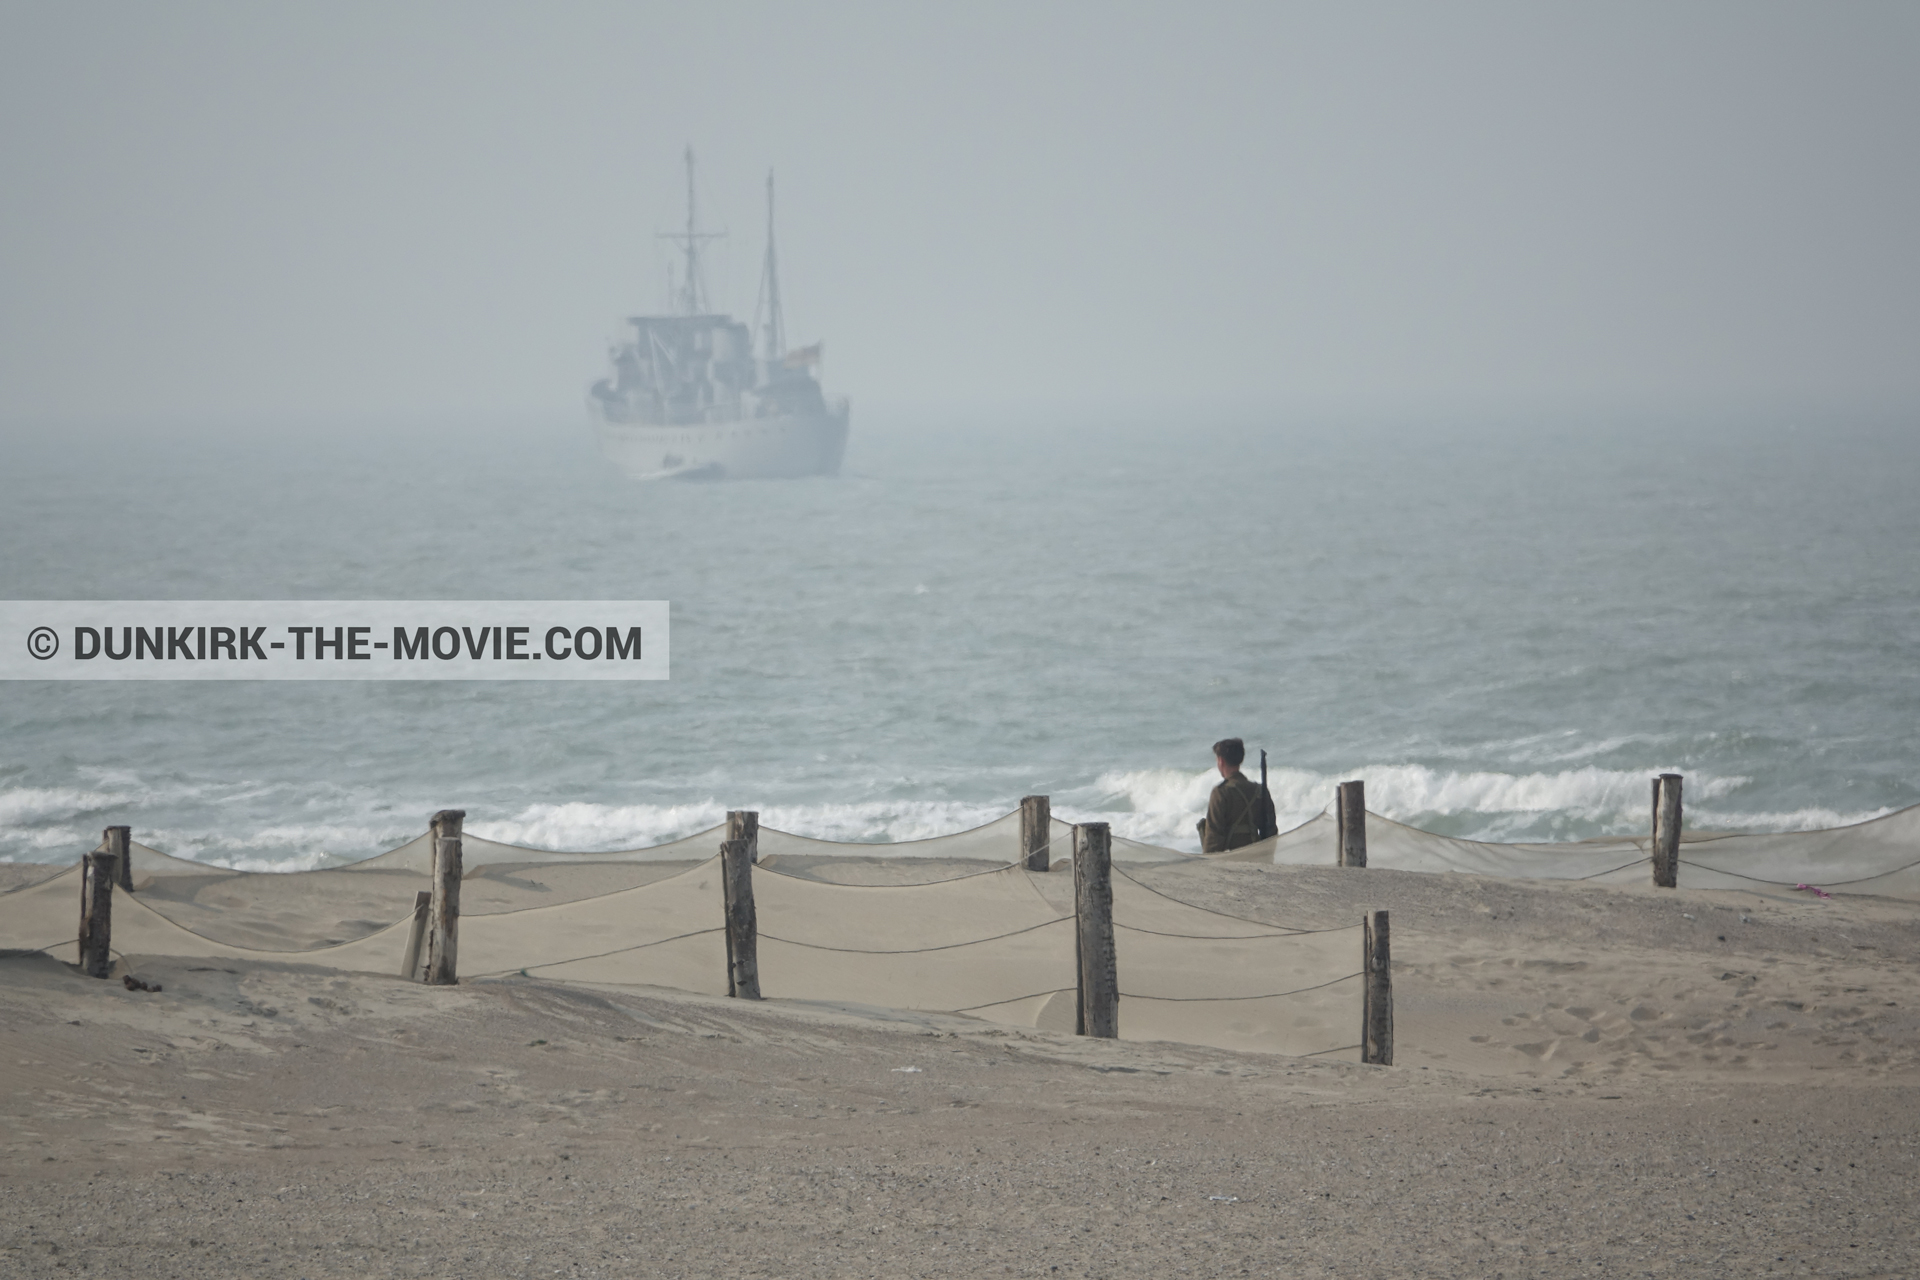 Fotos con barco, cielo gris, extras, mares agitados, playa,  durante el rodaje de la película Dunkerque de Nolan